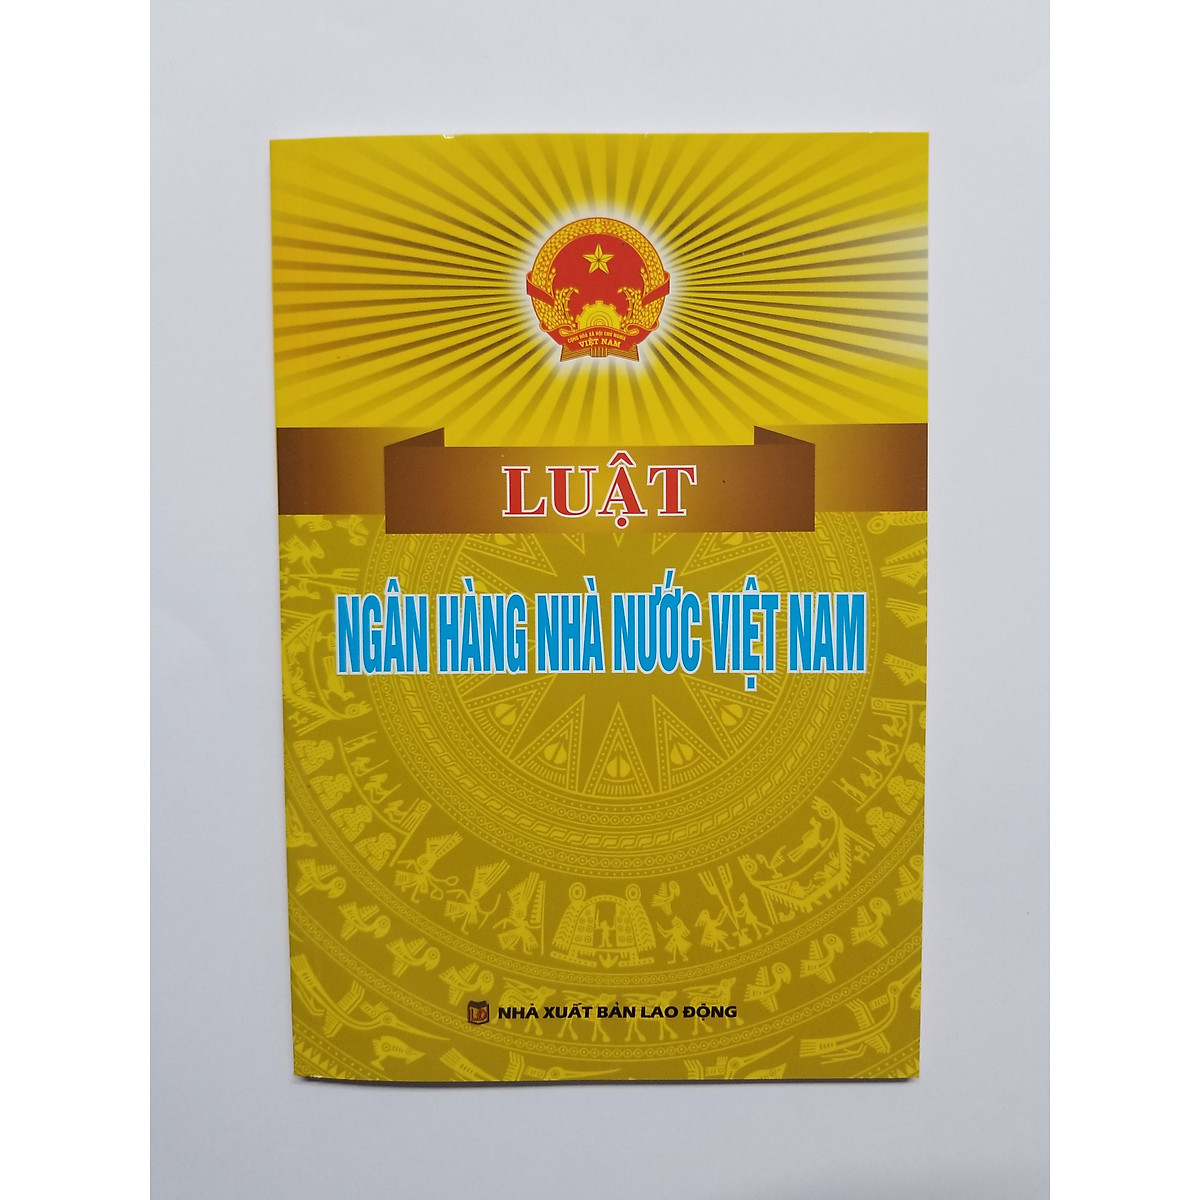 Luật Ngân Hàng Nhà Nước Việt Nam